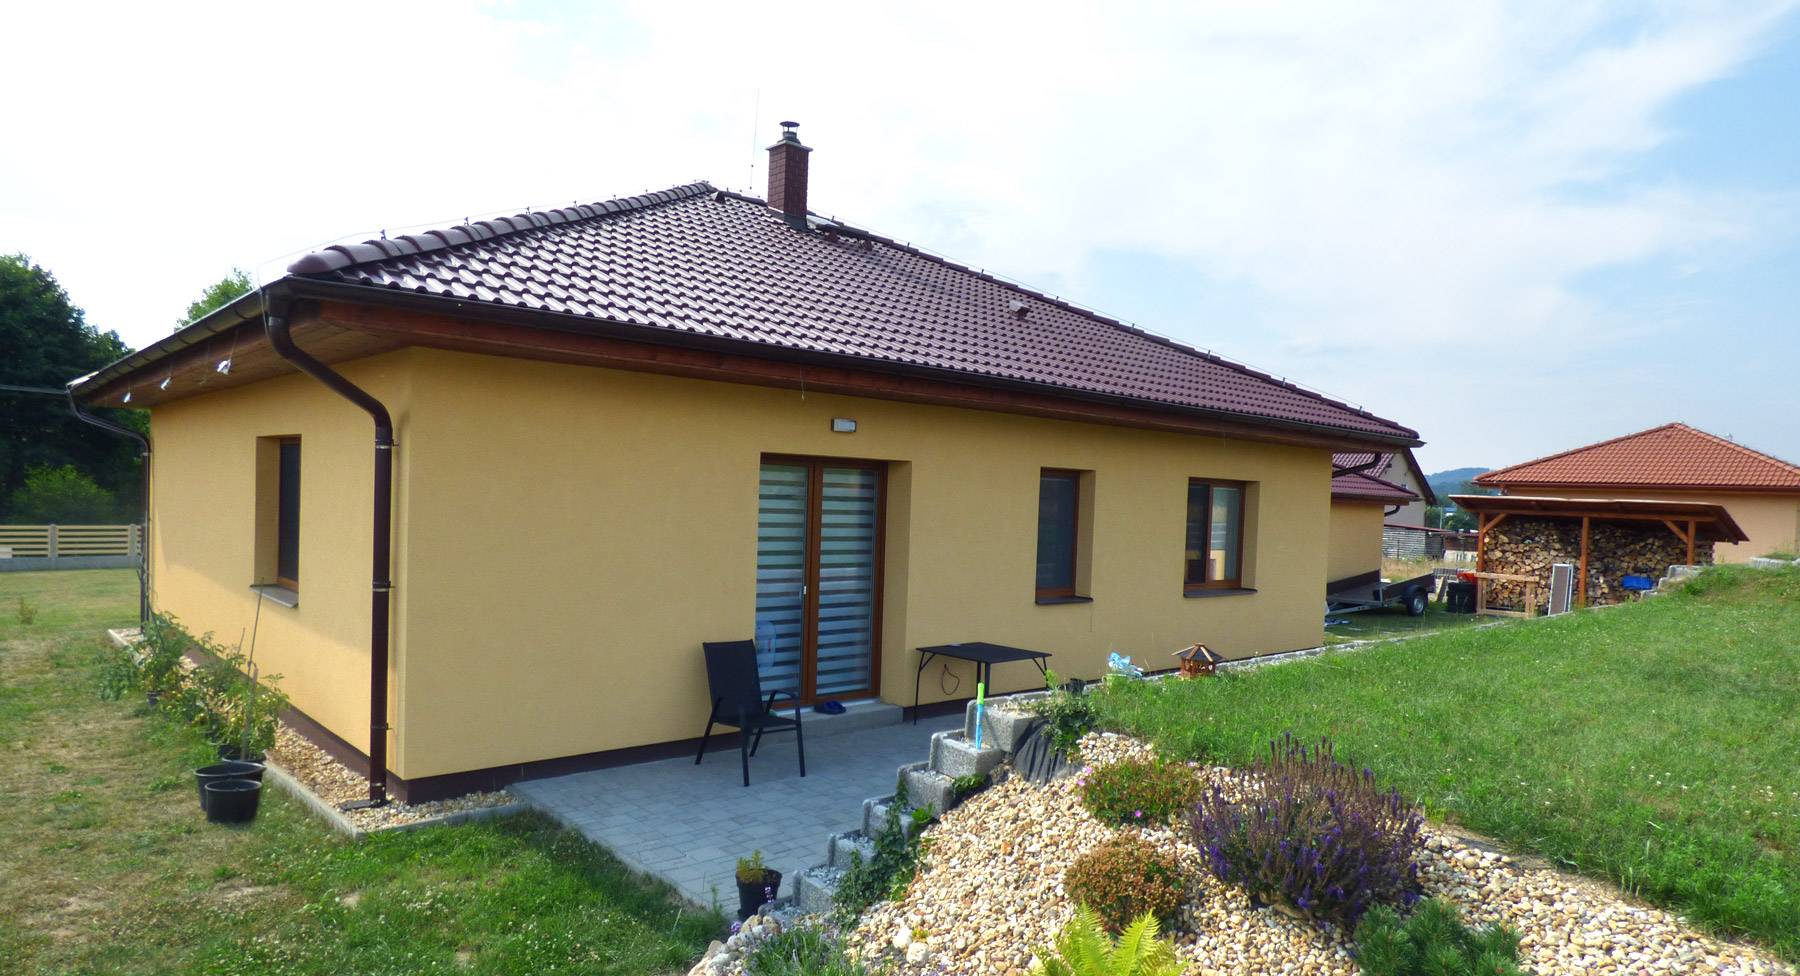 Projekt novostavby zděného rodinného domu v Brništi